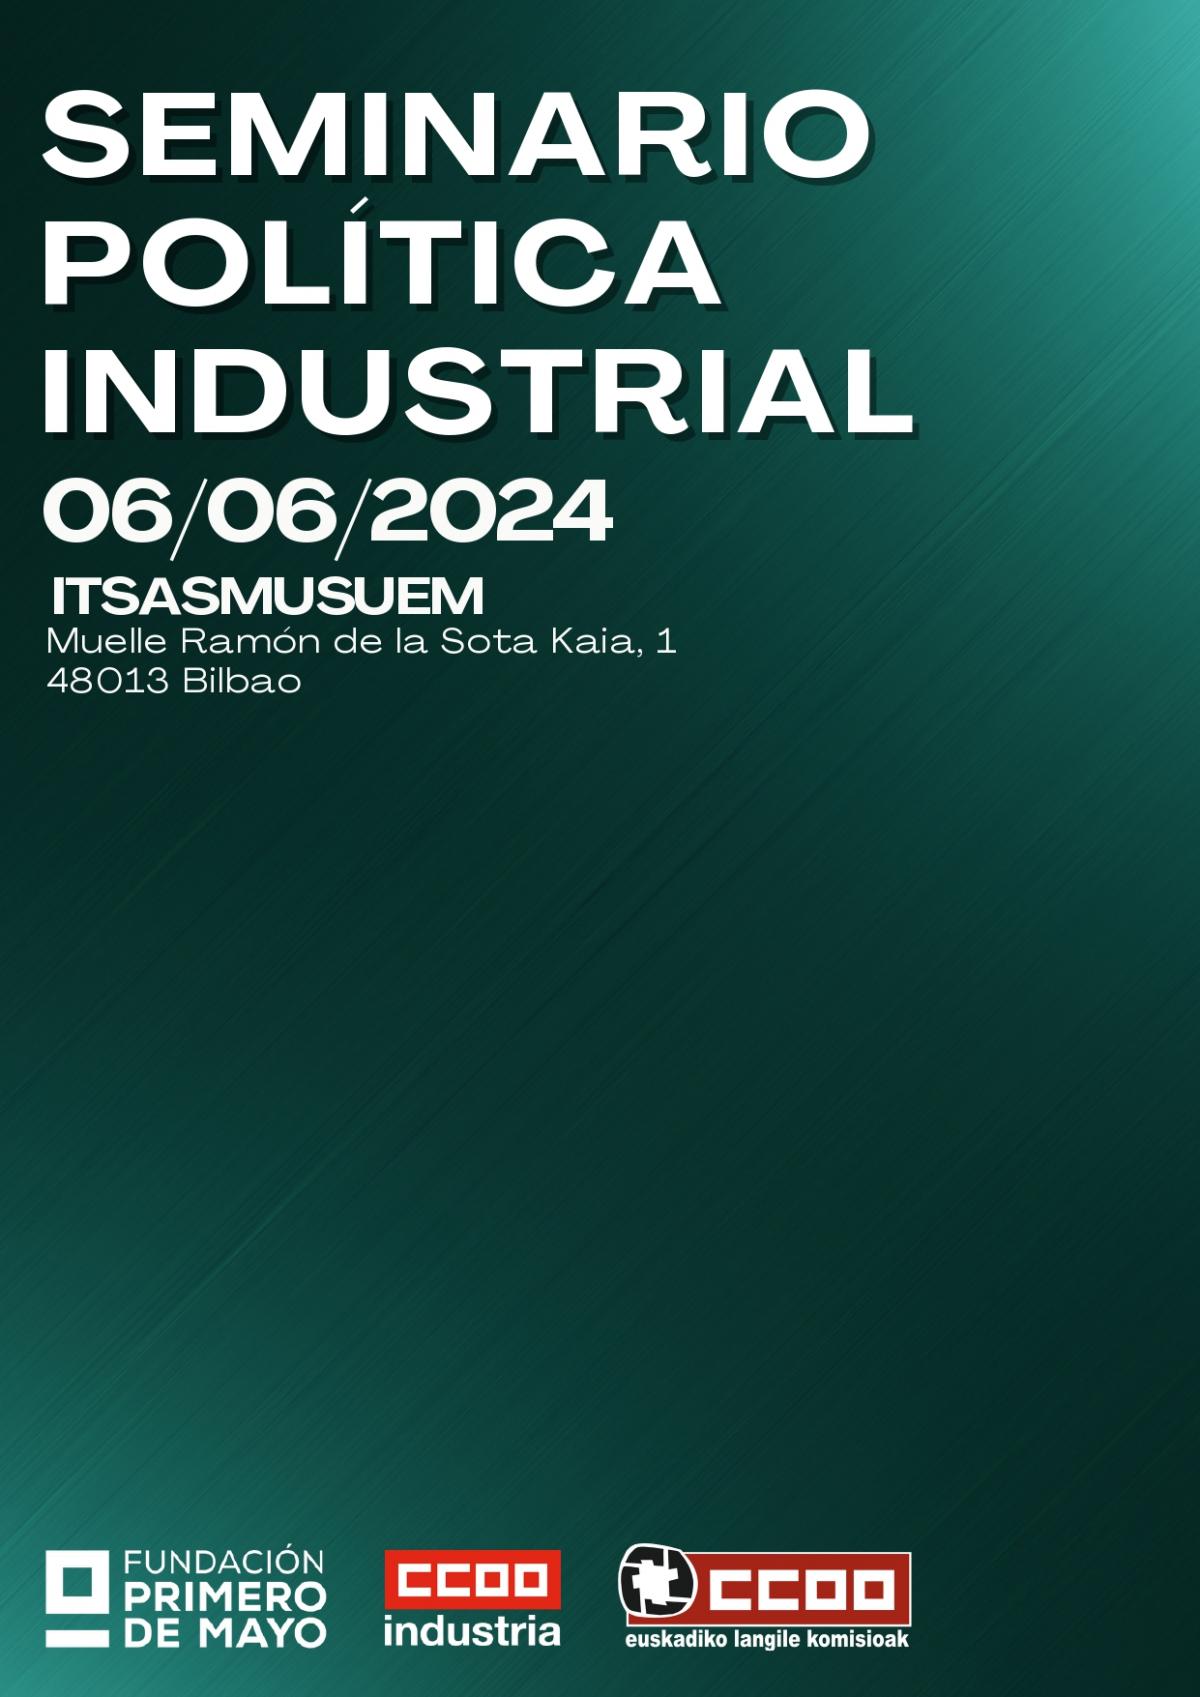 Seminario Poltica Industrial 06/06/2024